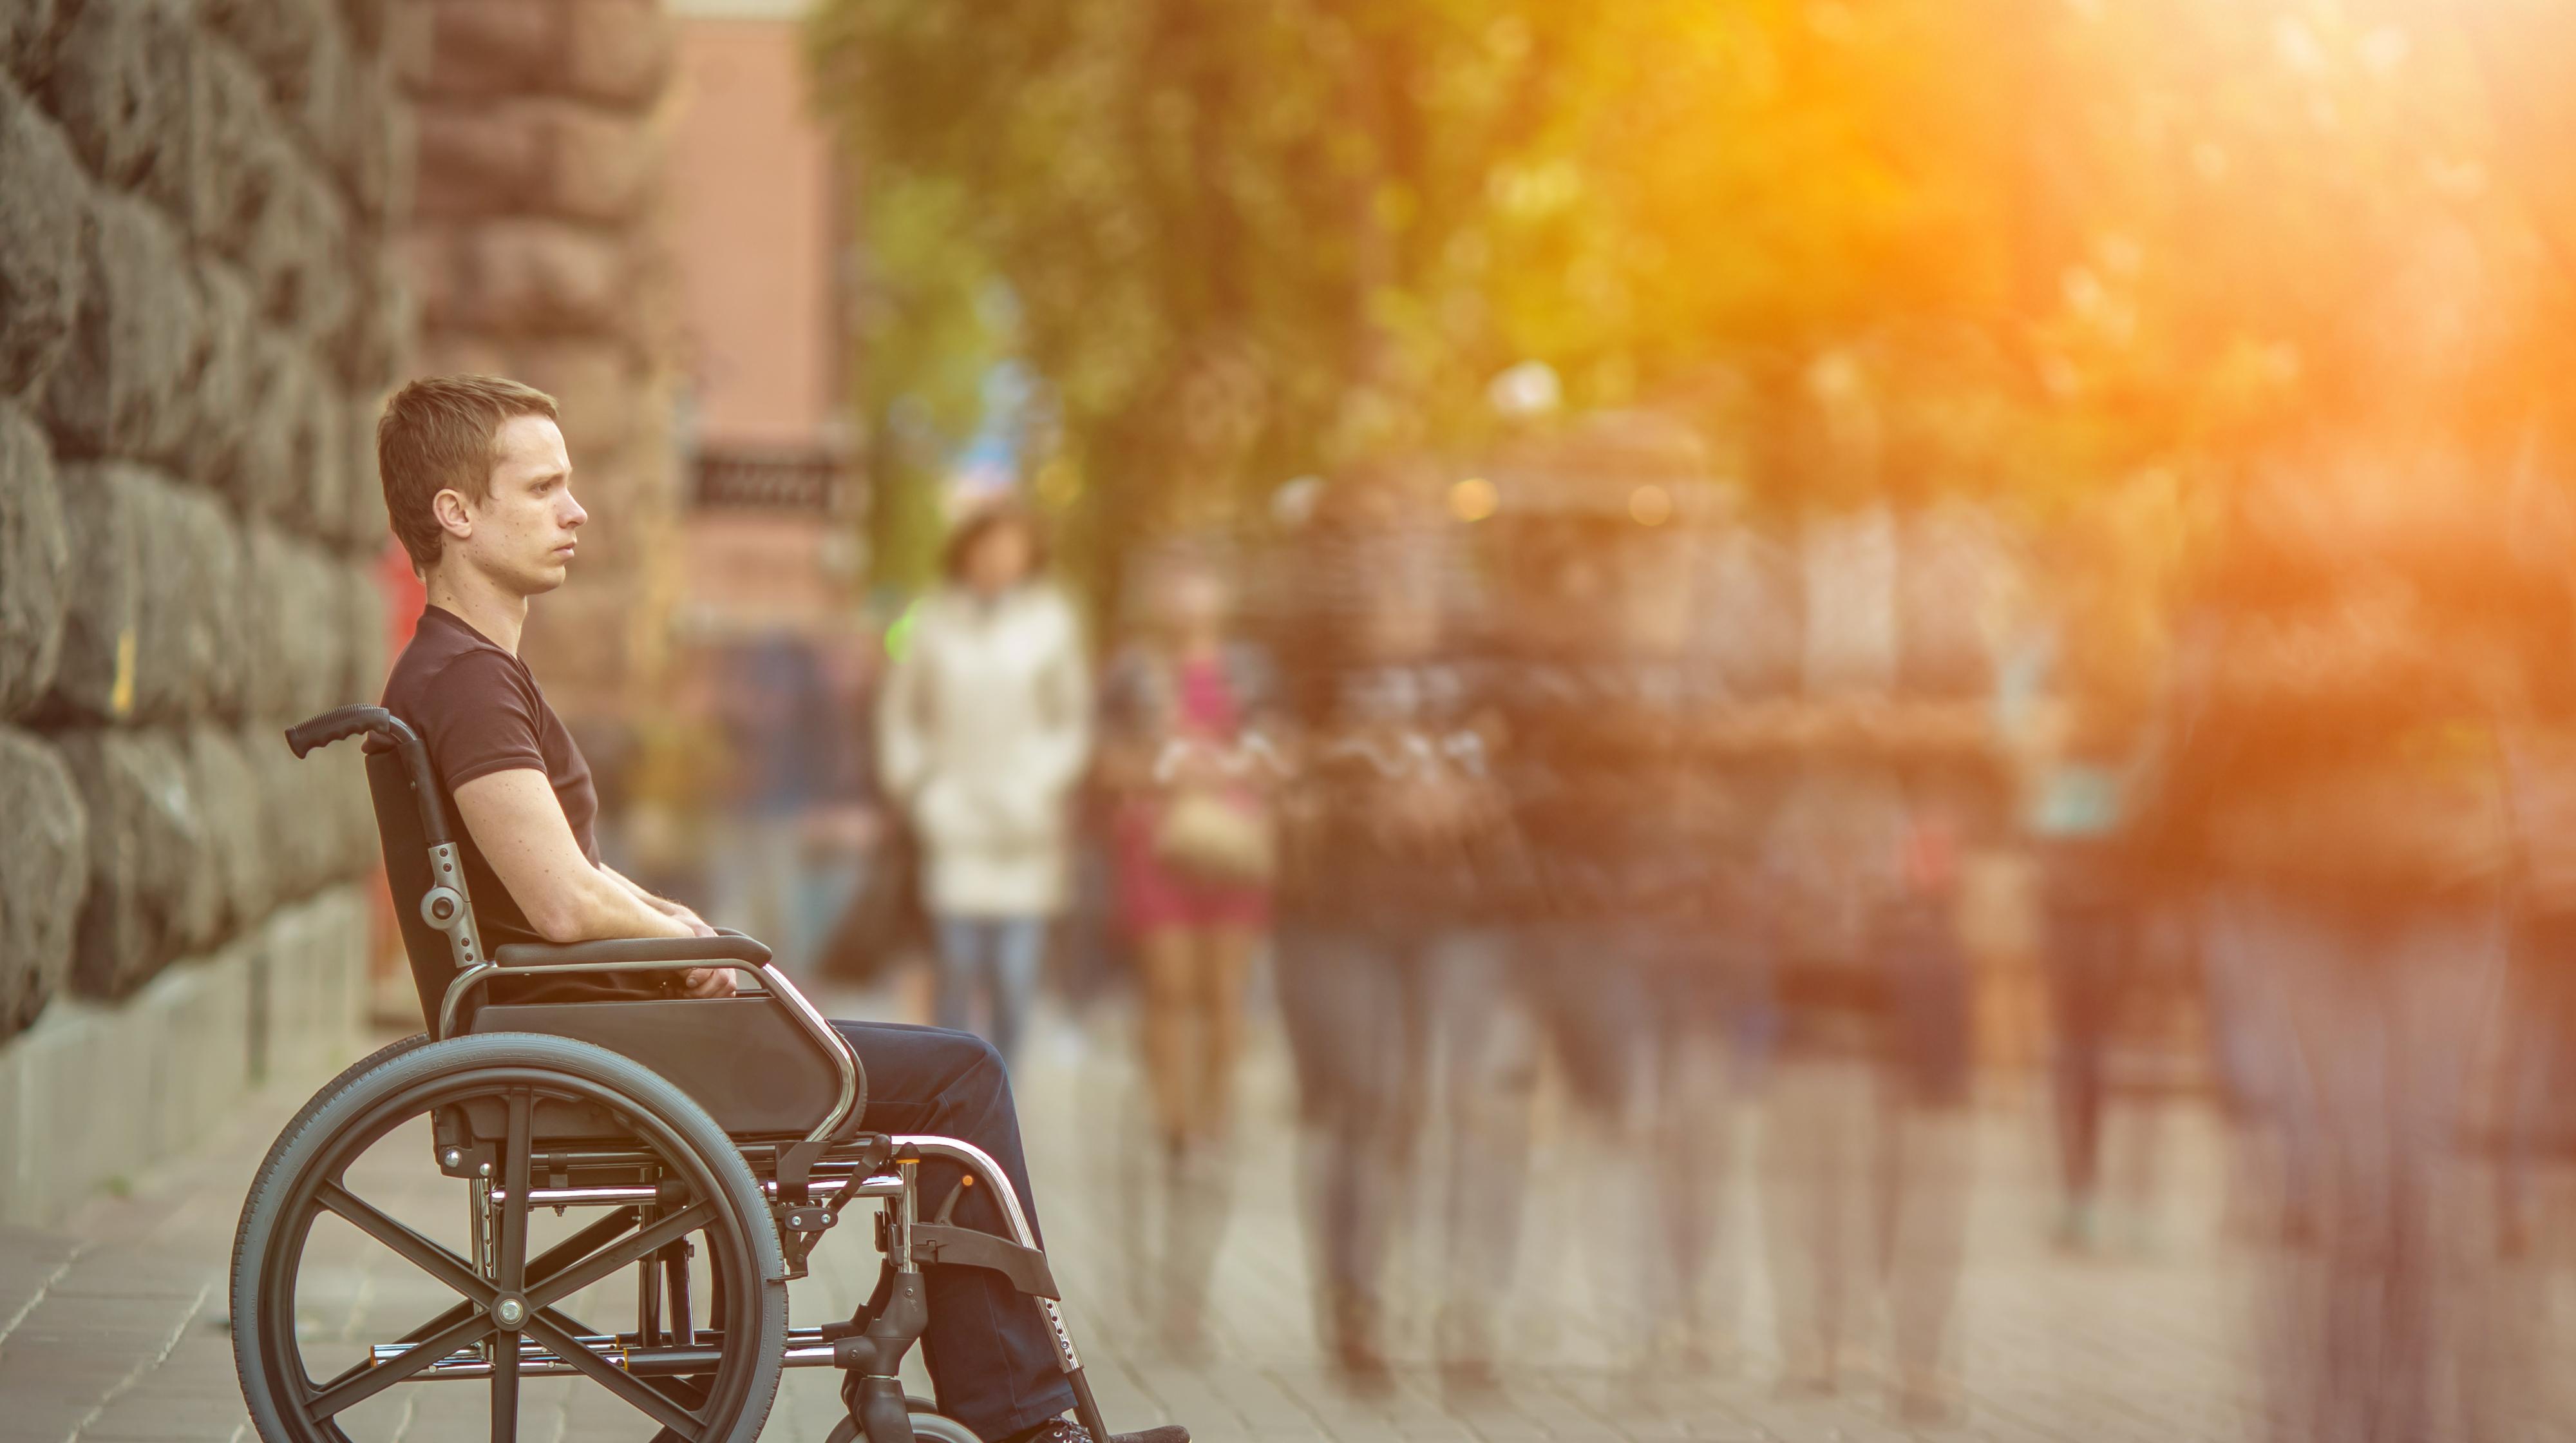 Intégration des personnes en situation de handicap : 6 communes de Wallonie picarde recevront le label Handycity